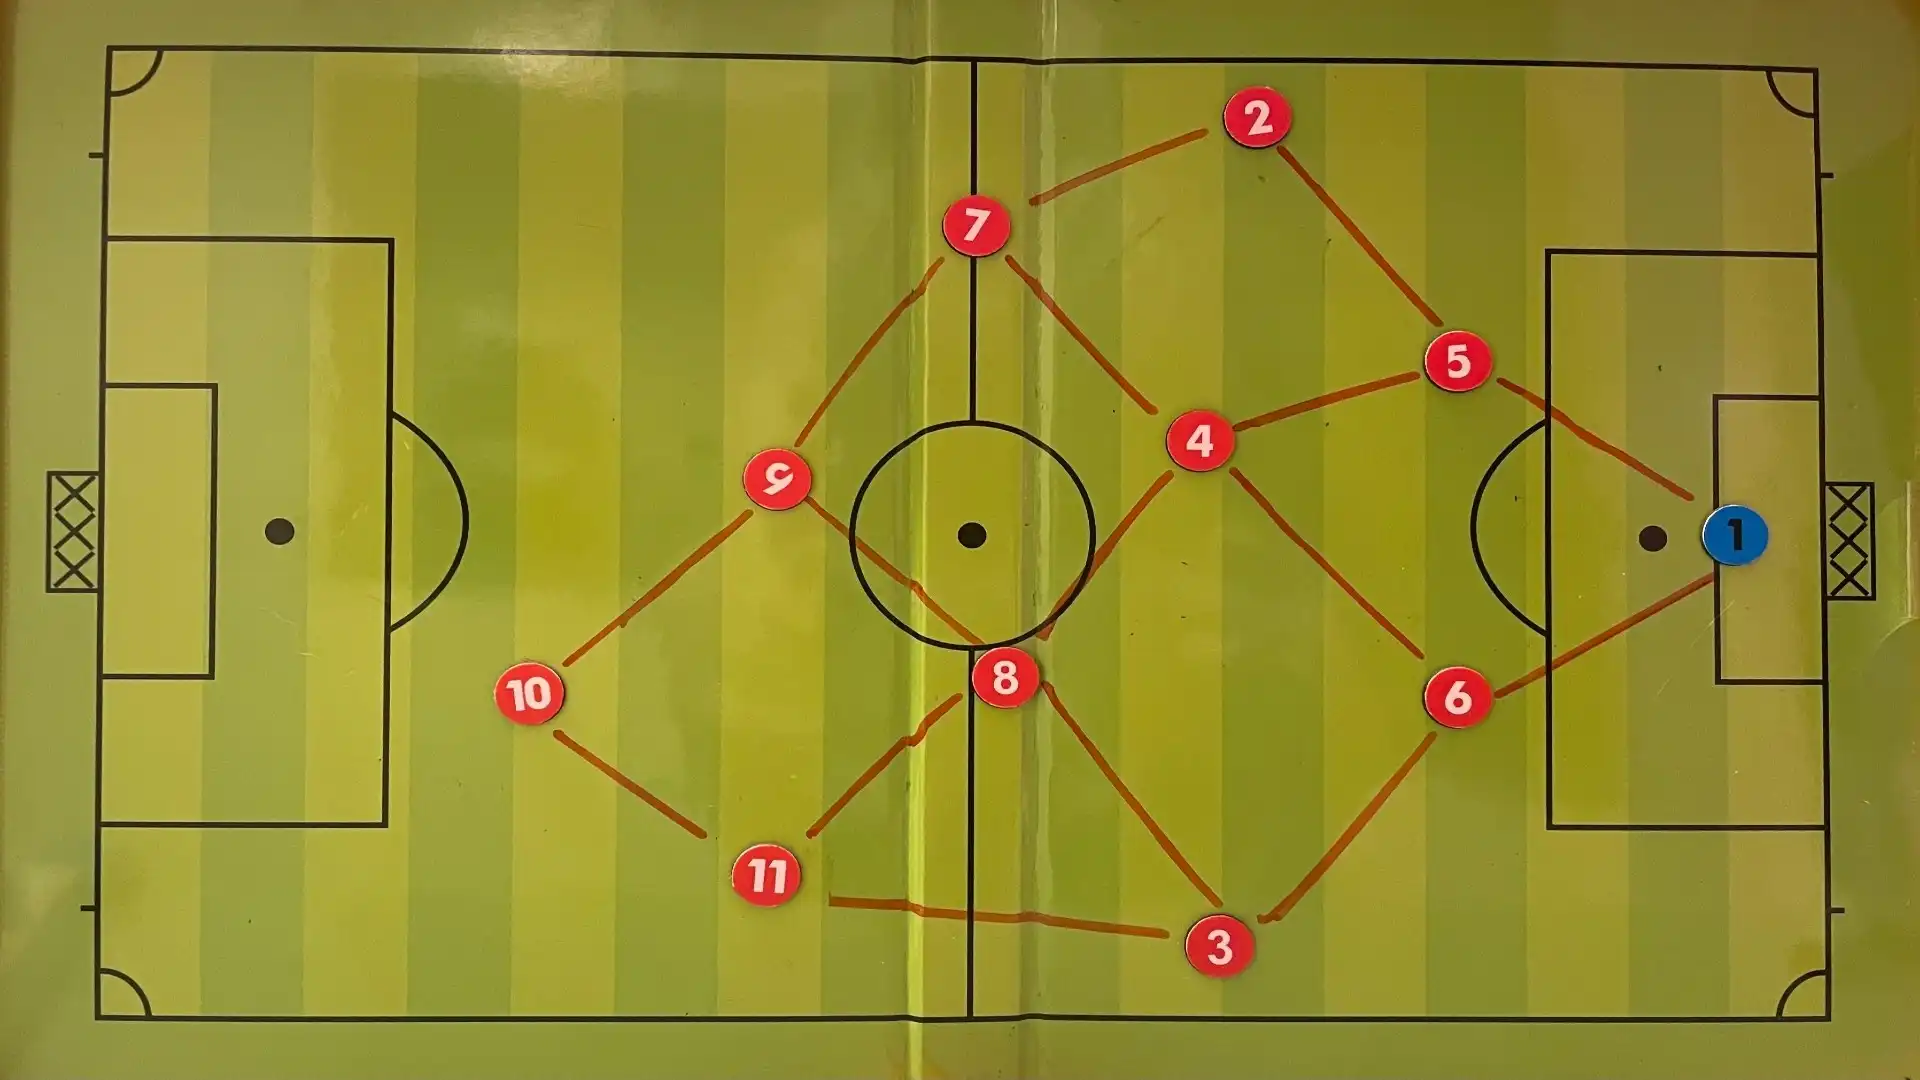 Questo sistema di gioco impone la ricerca del principio, nella fase di possesso palla, dello "scaglionamento offensivo", in cui le linee di passaggio costruiscono dei rombi o dei triangoli